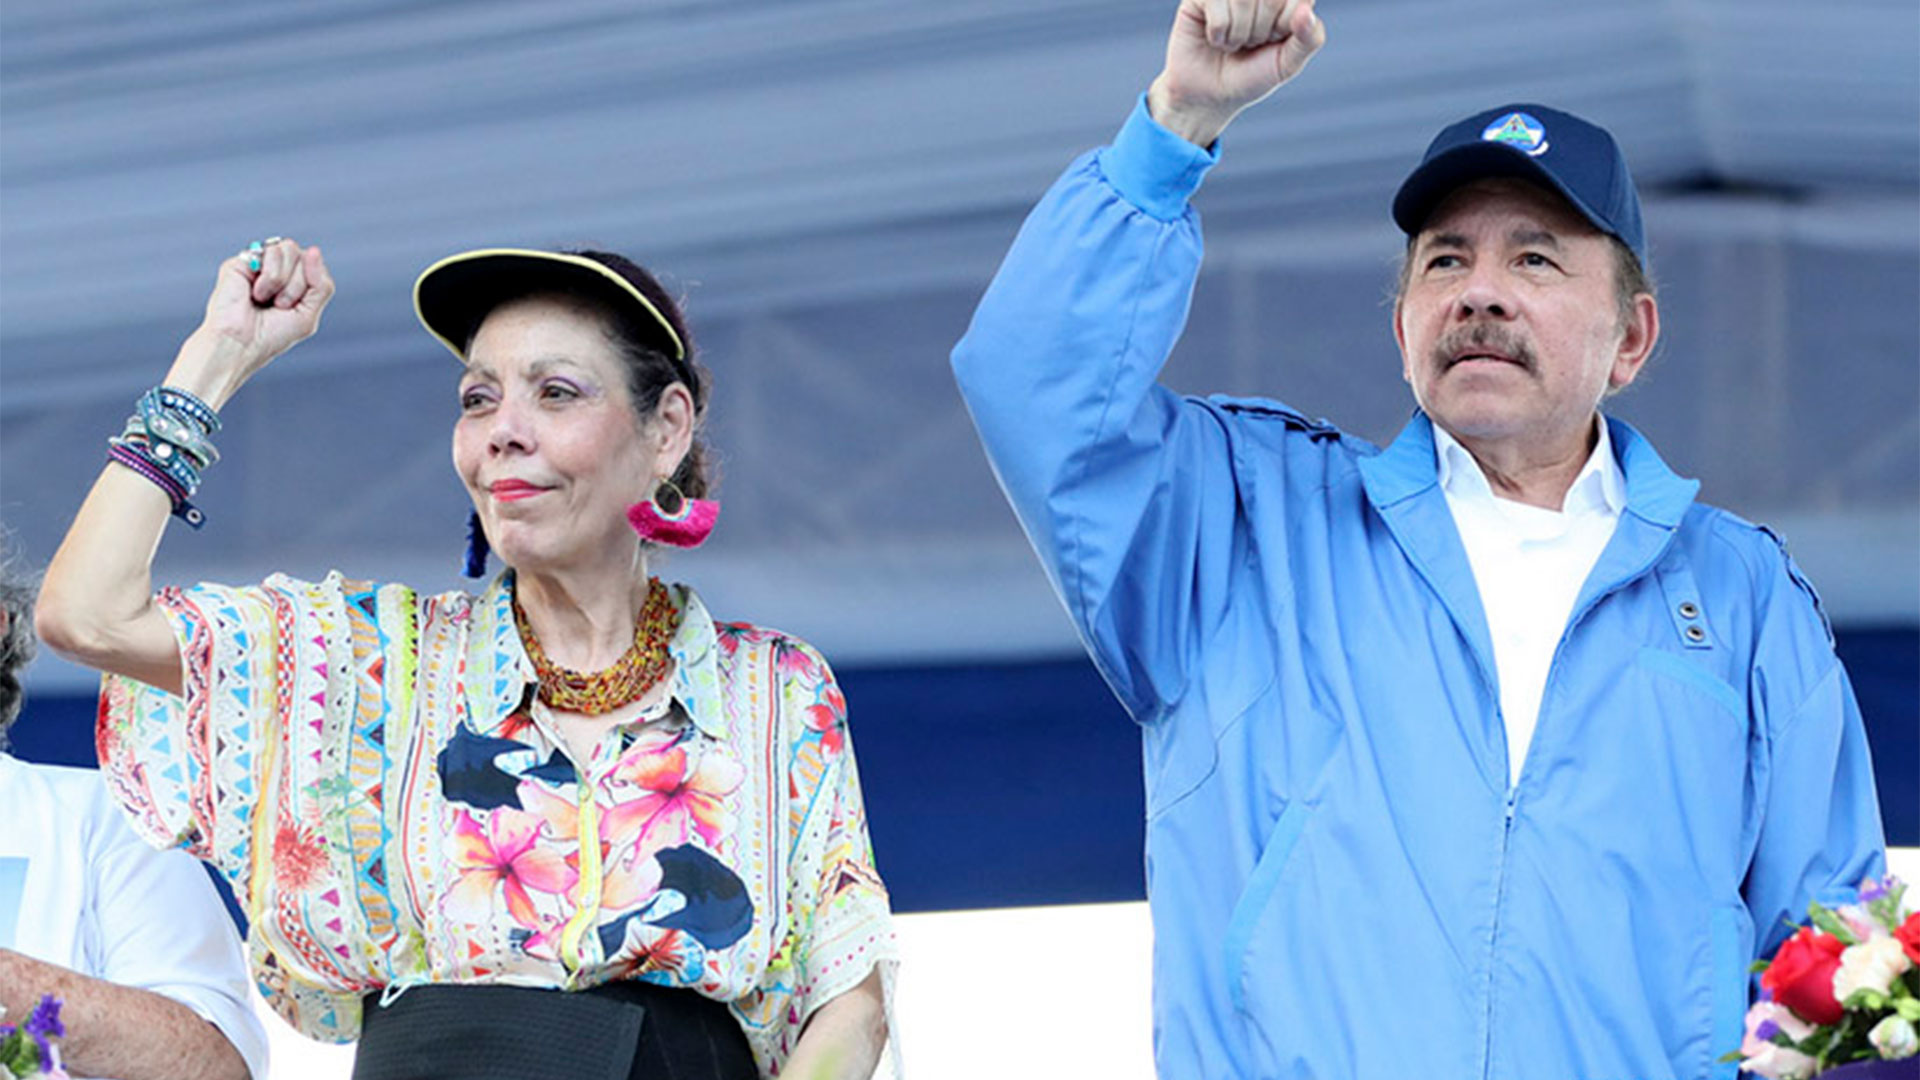 La Corte Interamericana de Derechos Humanos declaró al régimen de Ortega en “desacato permanente” a las órdenes de liberar a los presos políticos